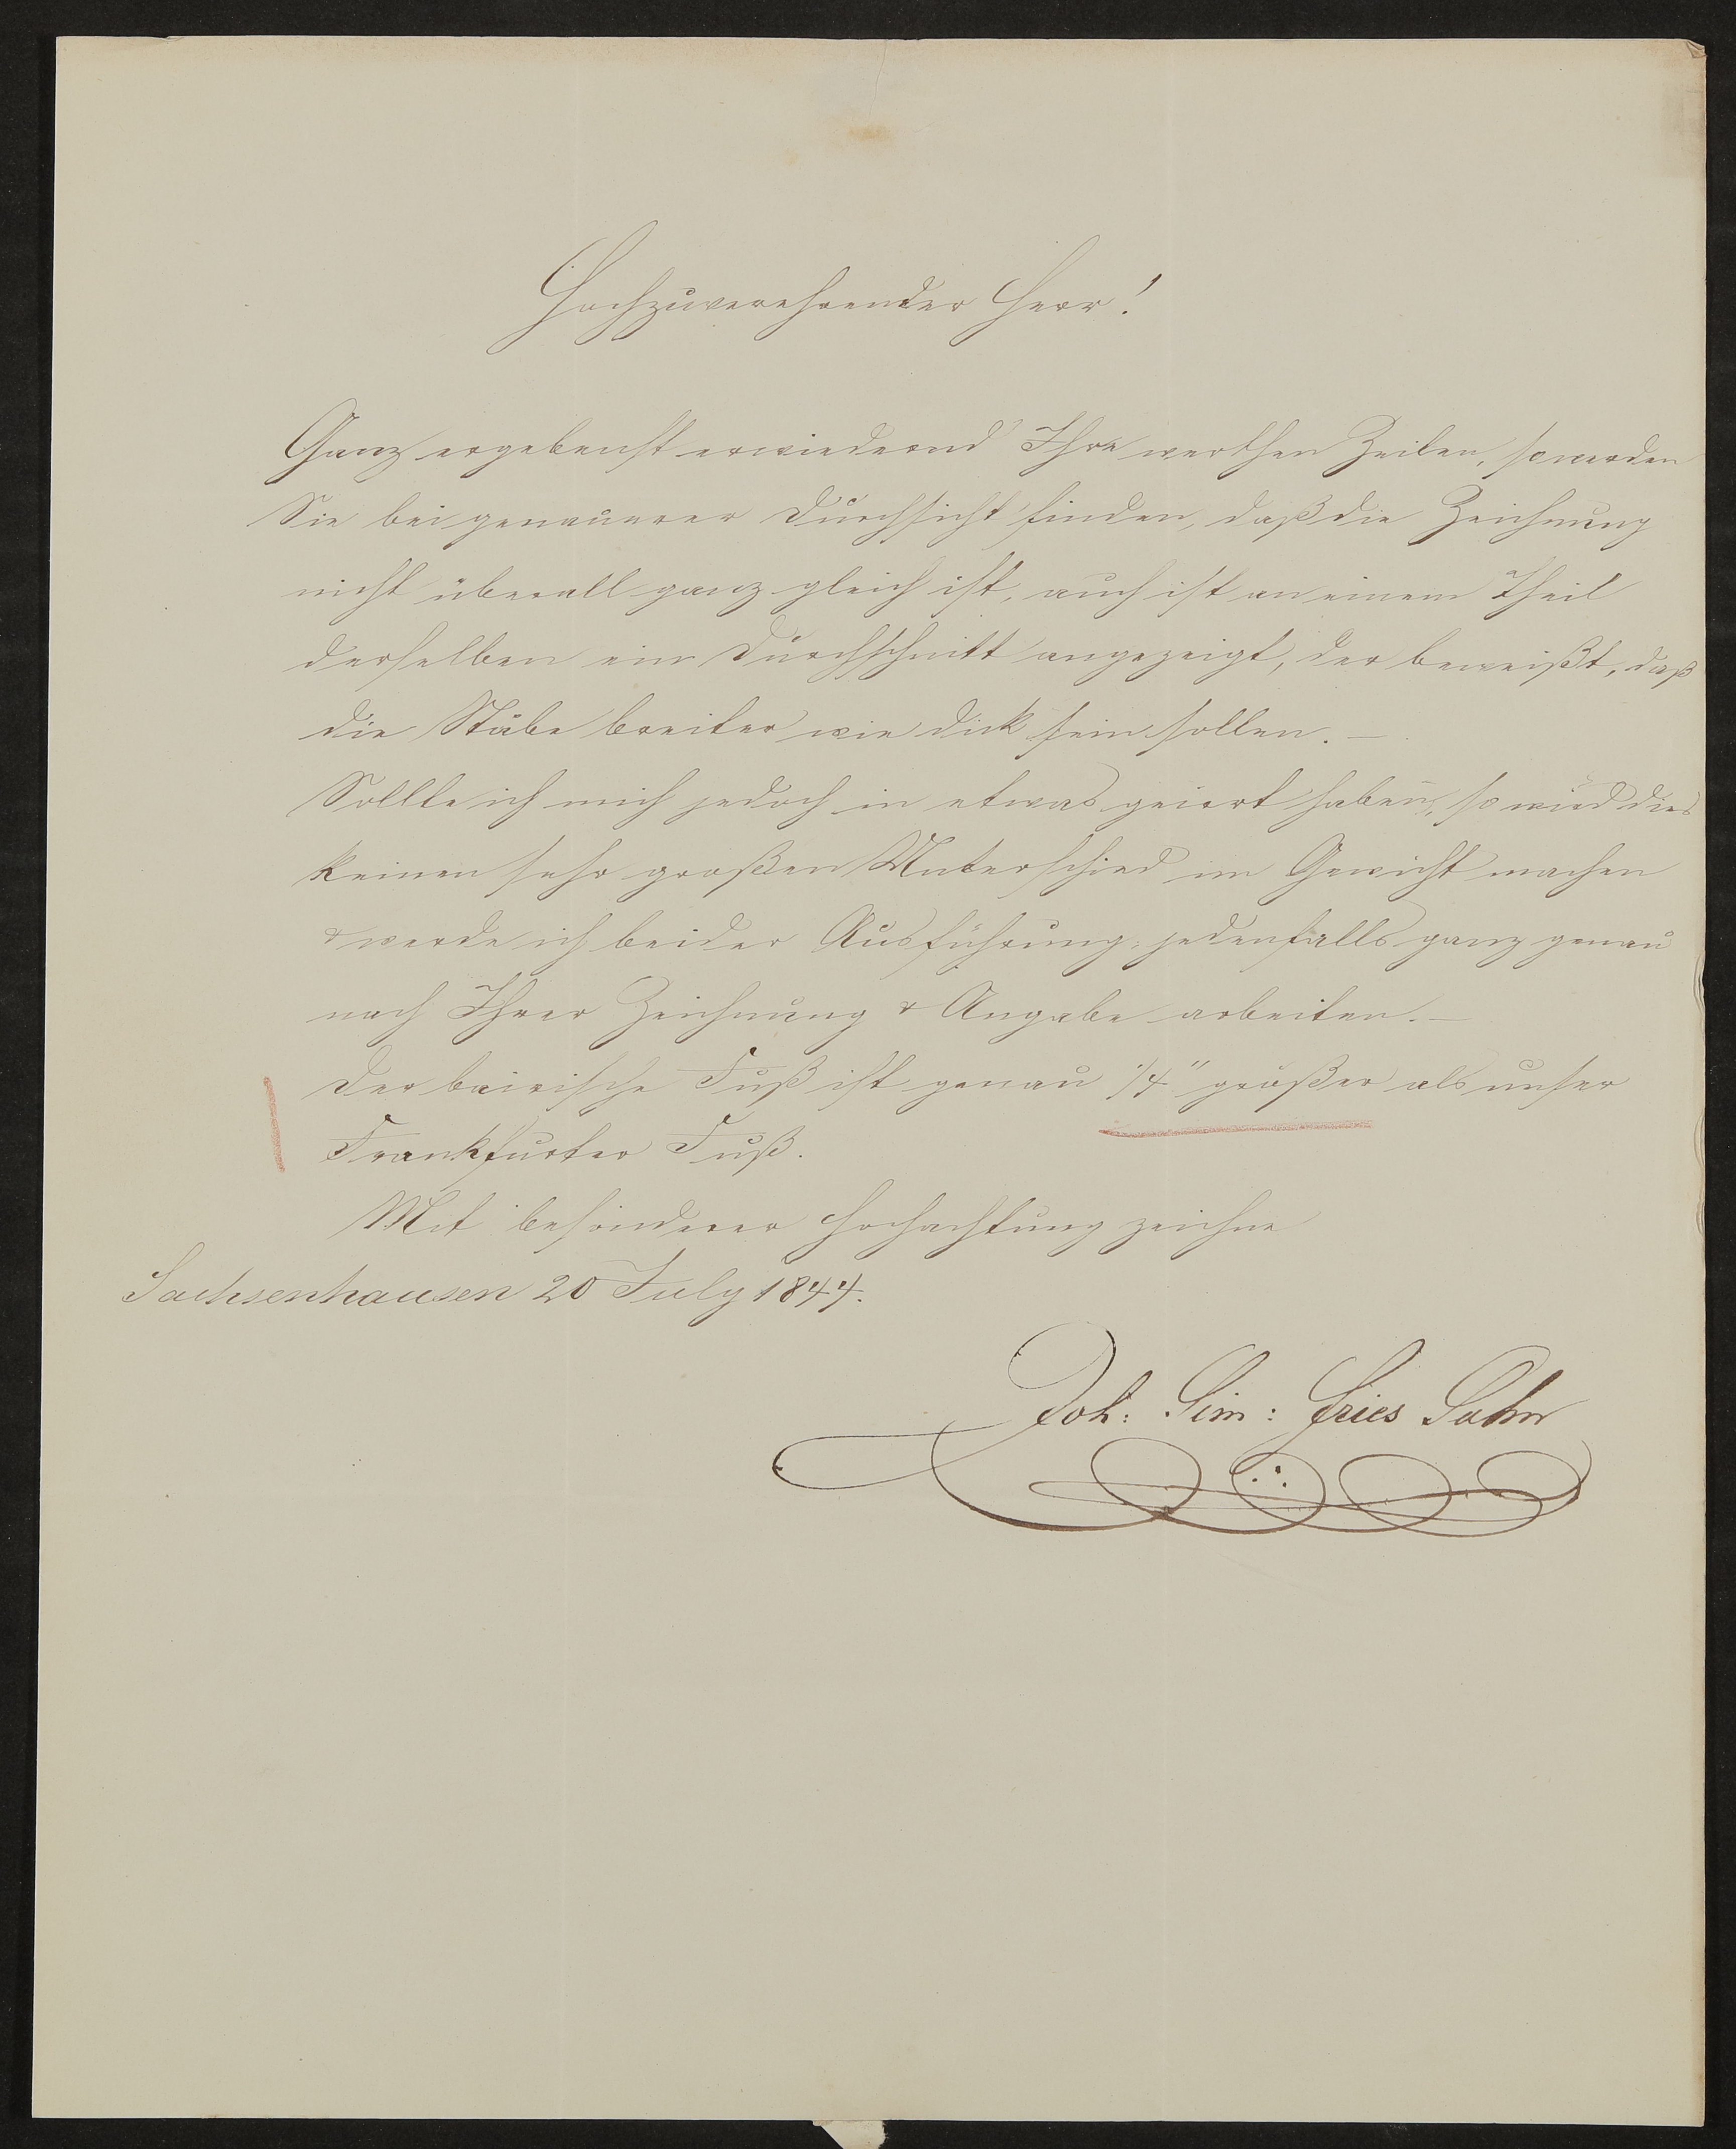 Brief von J.S. Fries Sohn an Georg von St. George vom 20.07.1844 (Freies Deutsches Hochstift / Frankfurter Goethe-Museum Public Domain Mark)